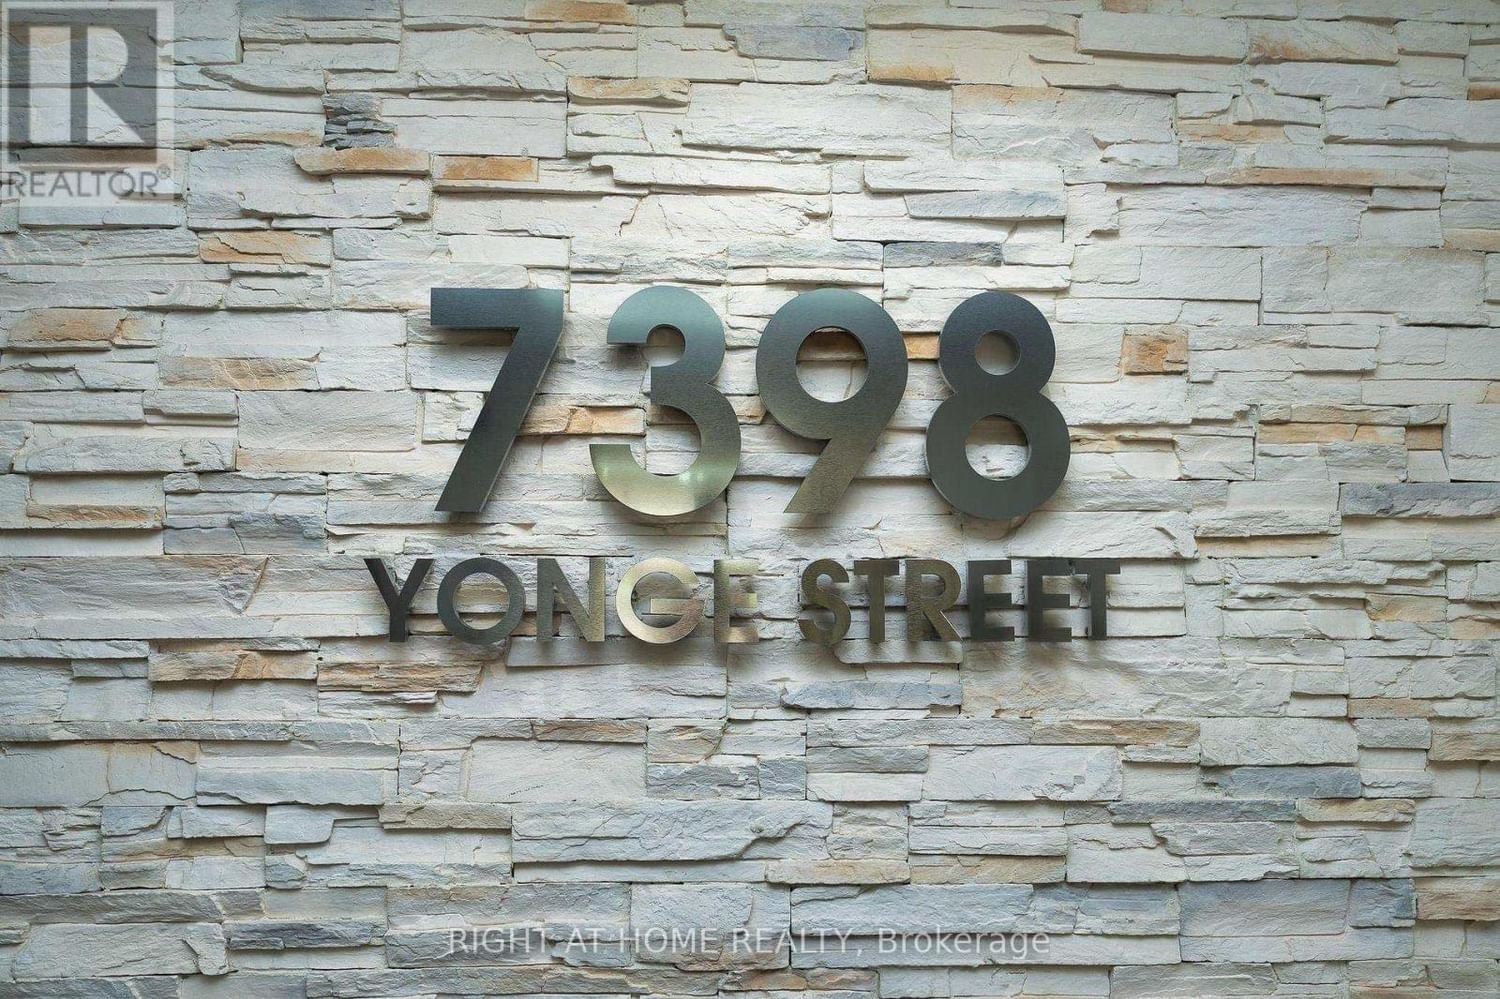 108 - 7398 YONGE STREET Image 4